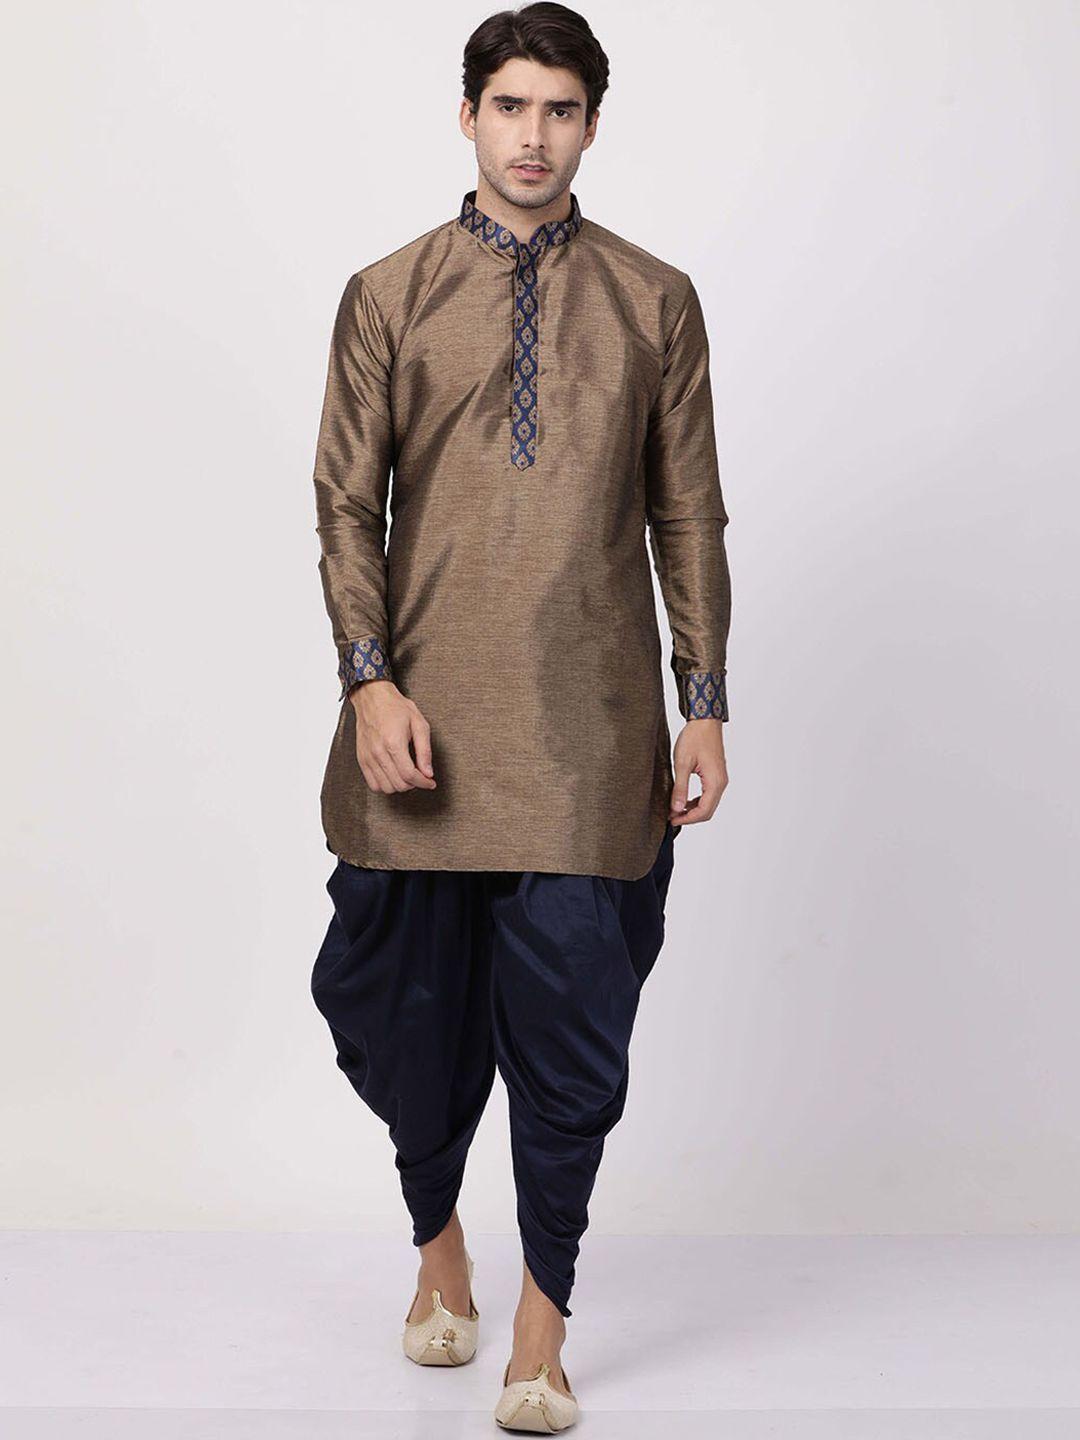 vm mandarin collar ethnic motifs yoke design kurta with dhoti pants